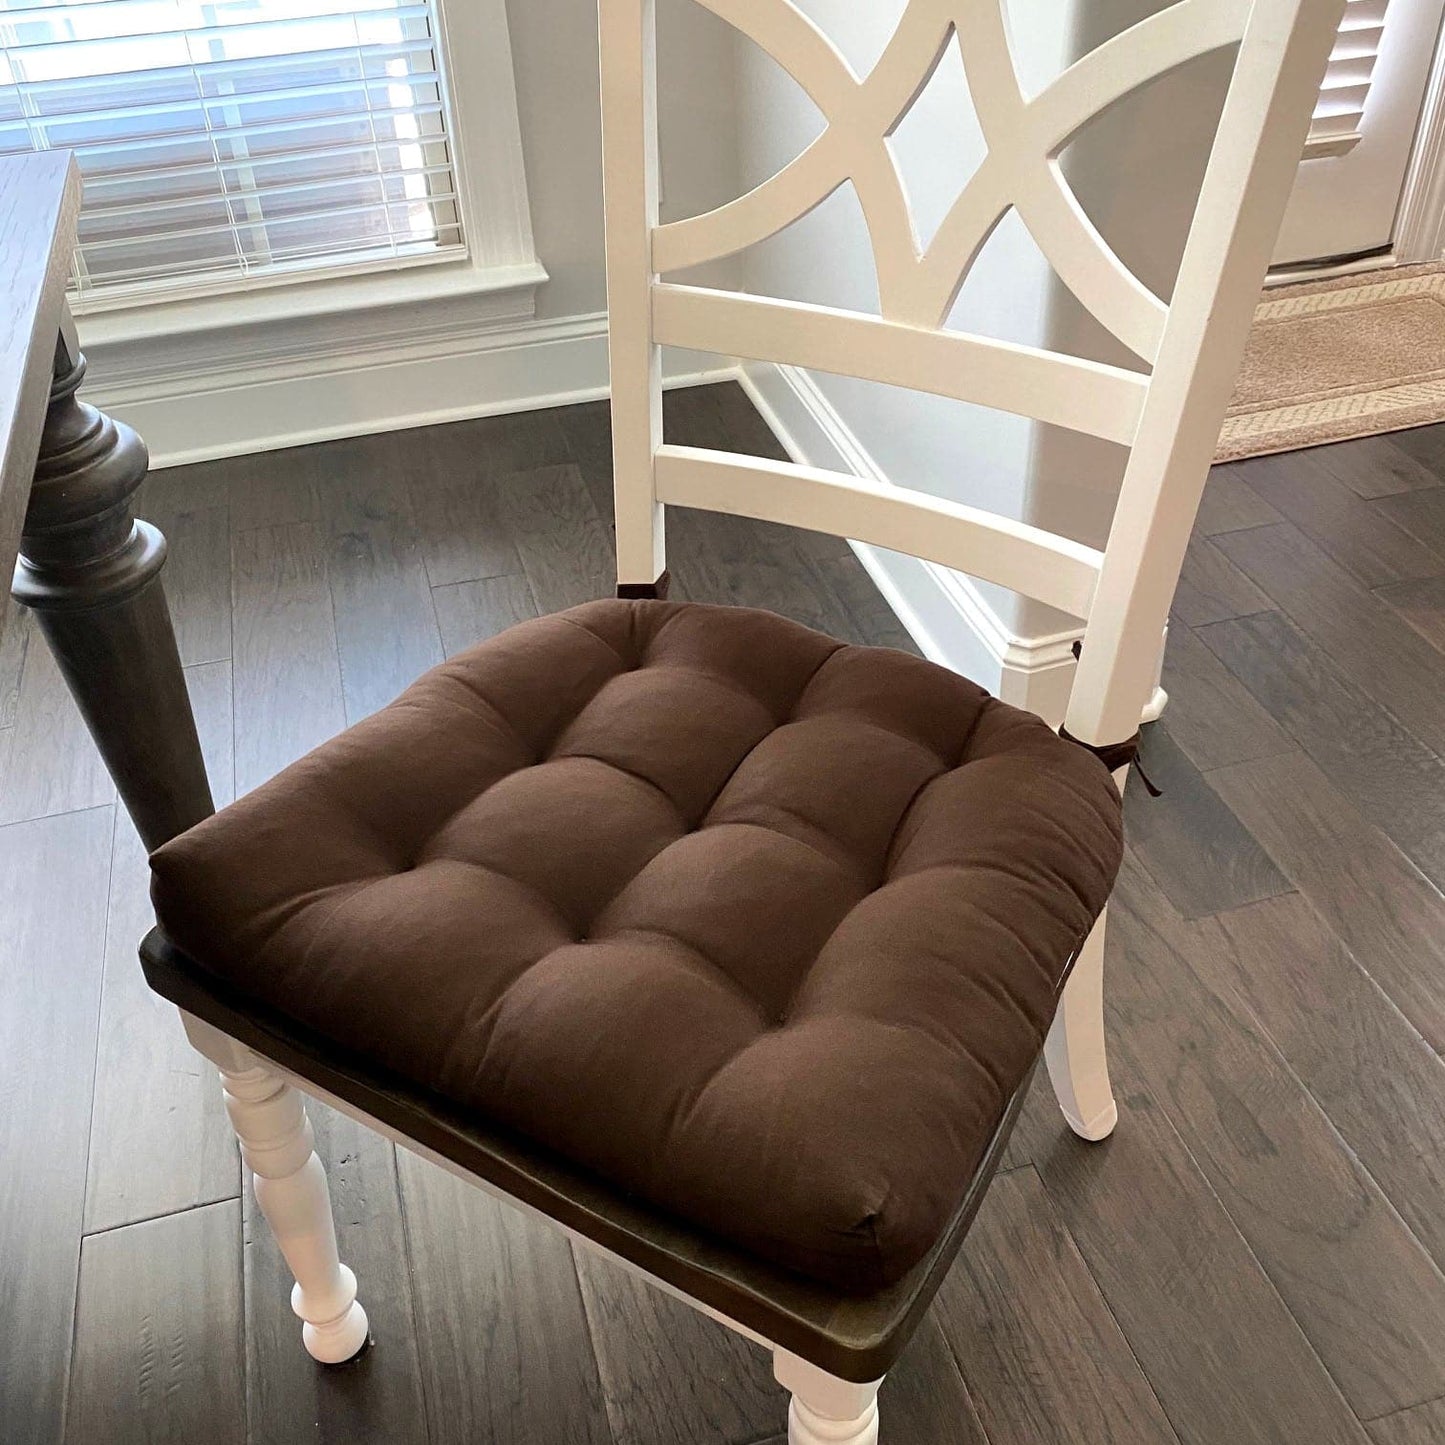 Hypo - Allergenic Natural Cotton Brown Kitchen Chair Pads